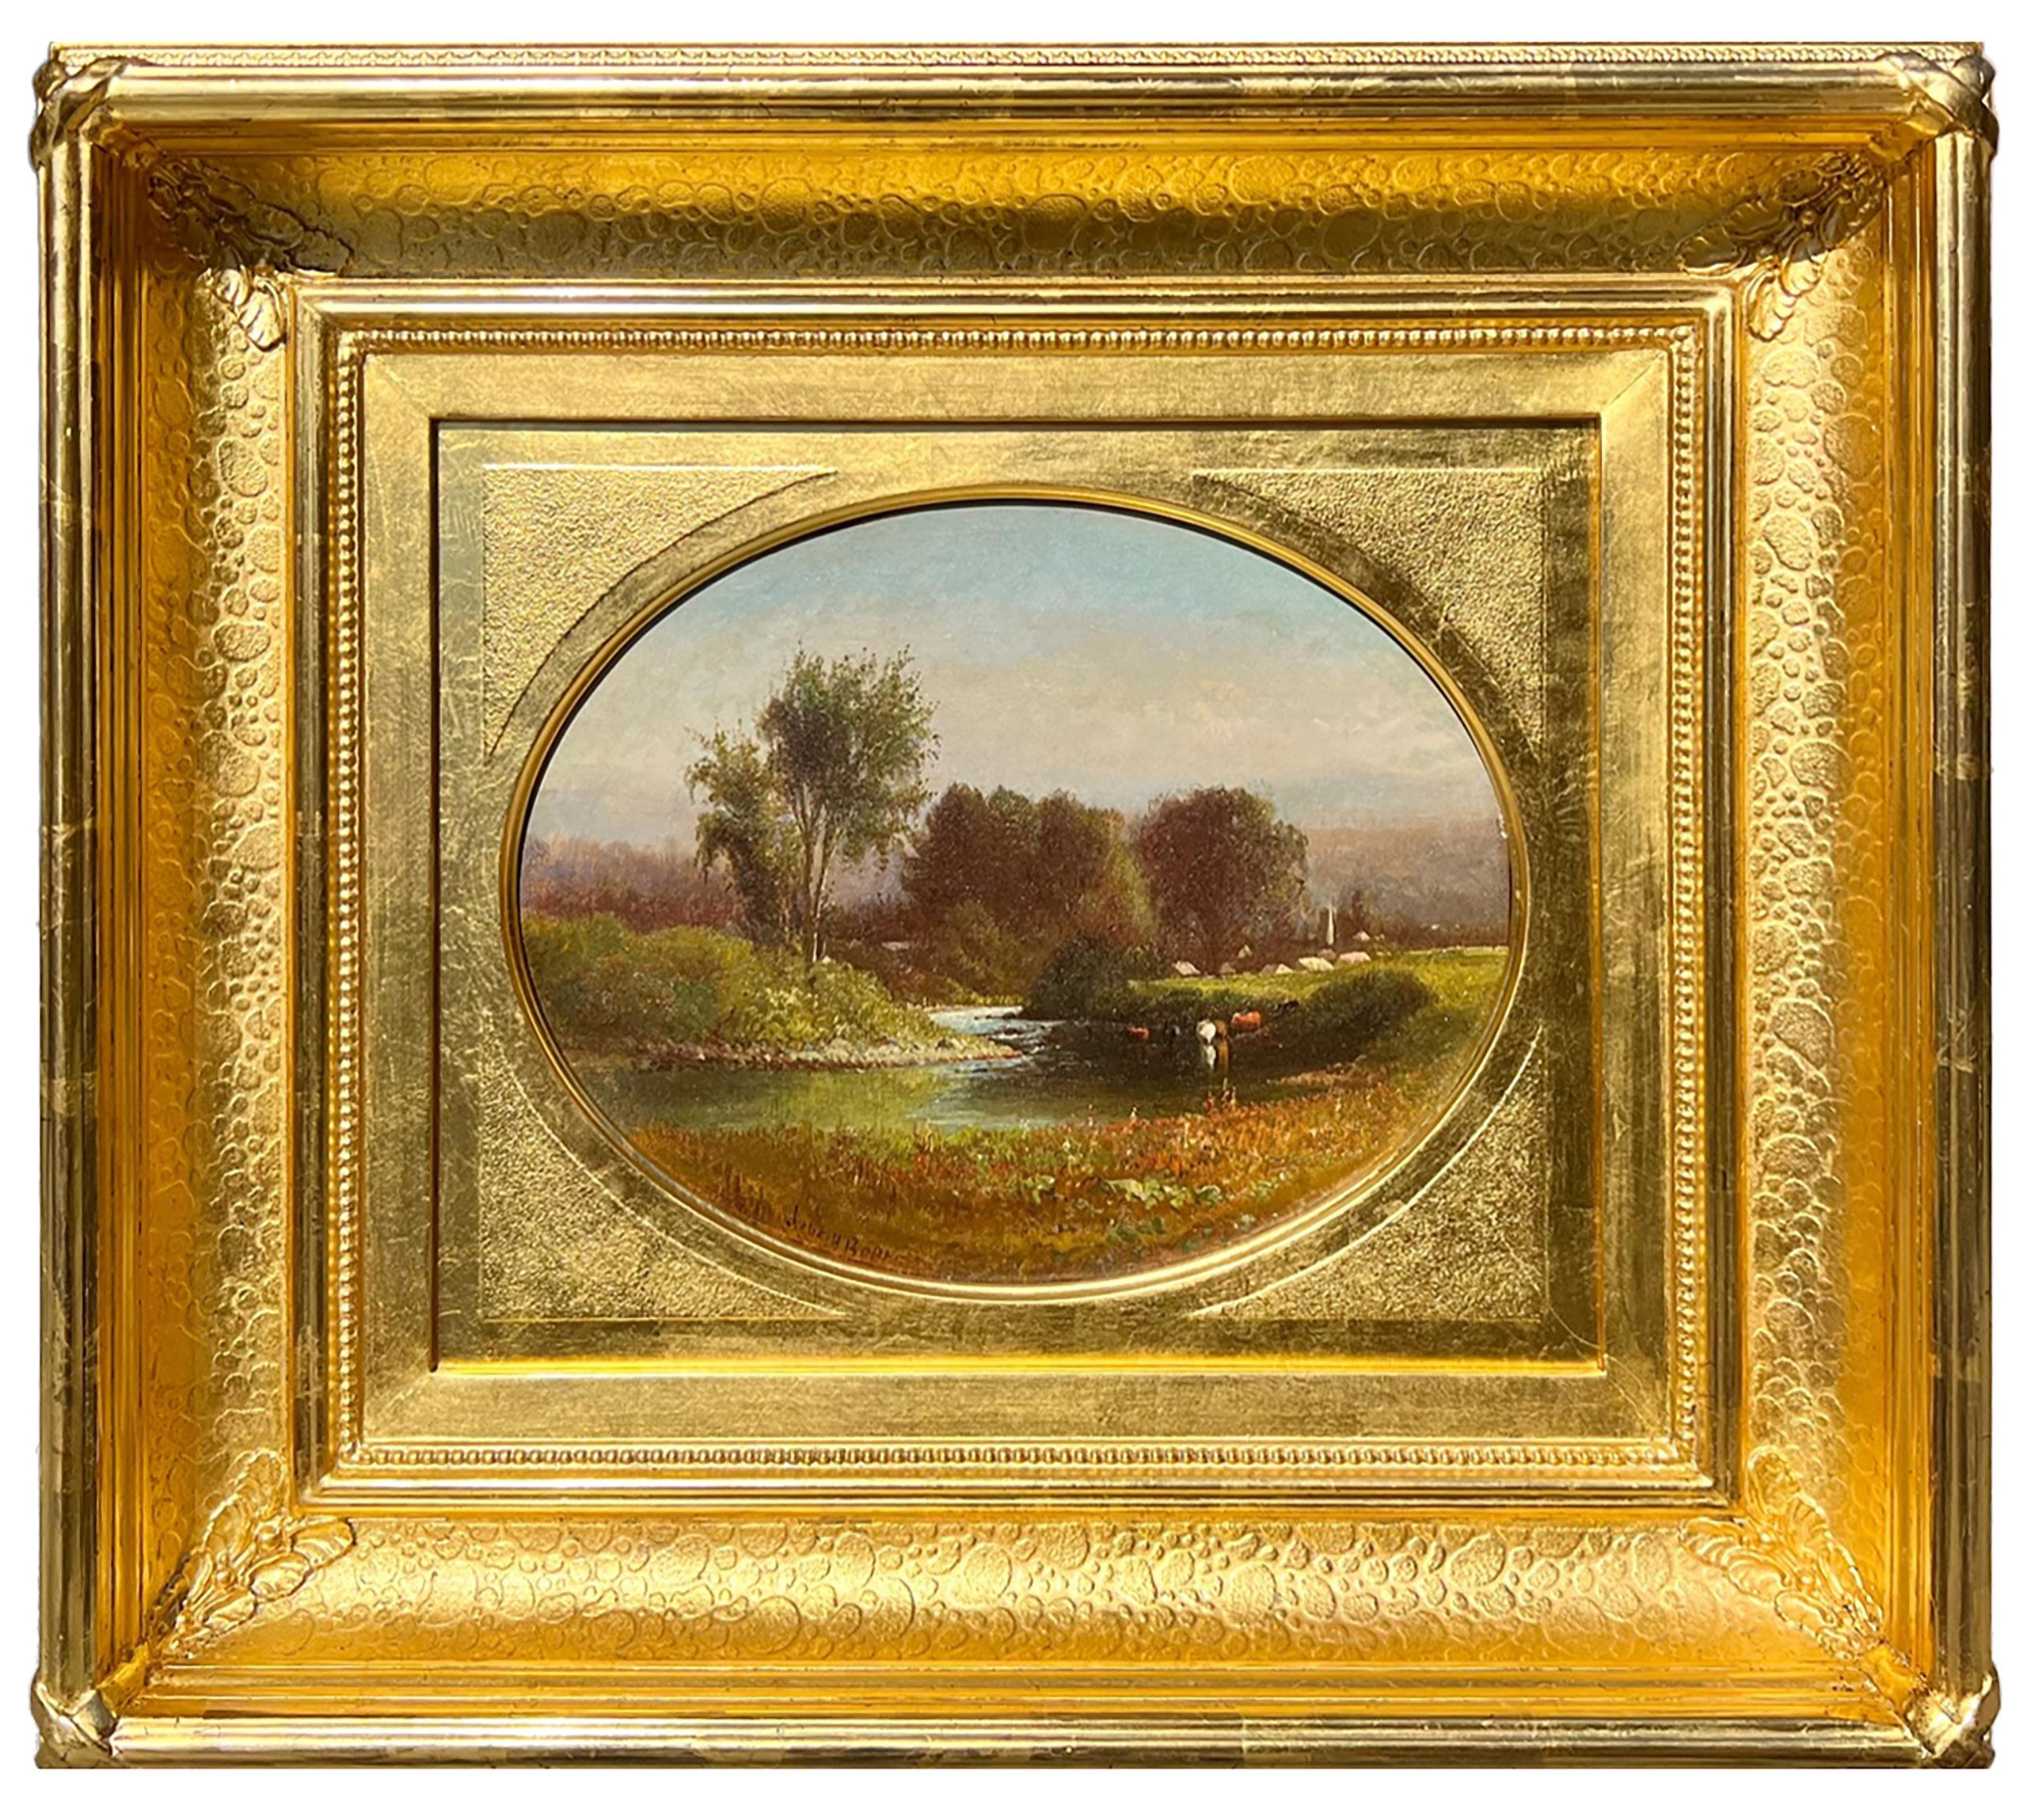 Das von der Hudson River School-Künstlerin Julie Hart Beers (1835-1913) gemalte Bild "Summer along the Boquet River" ist in Öl auf Leinwand gemalt und misst 9 x 11 Zoll. Es ist unten links signiert und datiert 1875. Das Werk ist in einem eleganten,